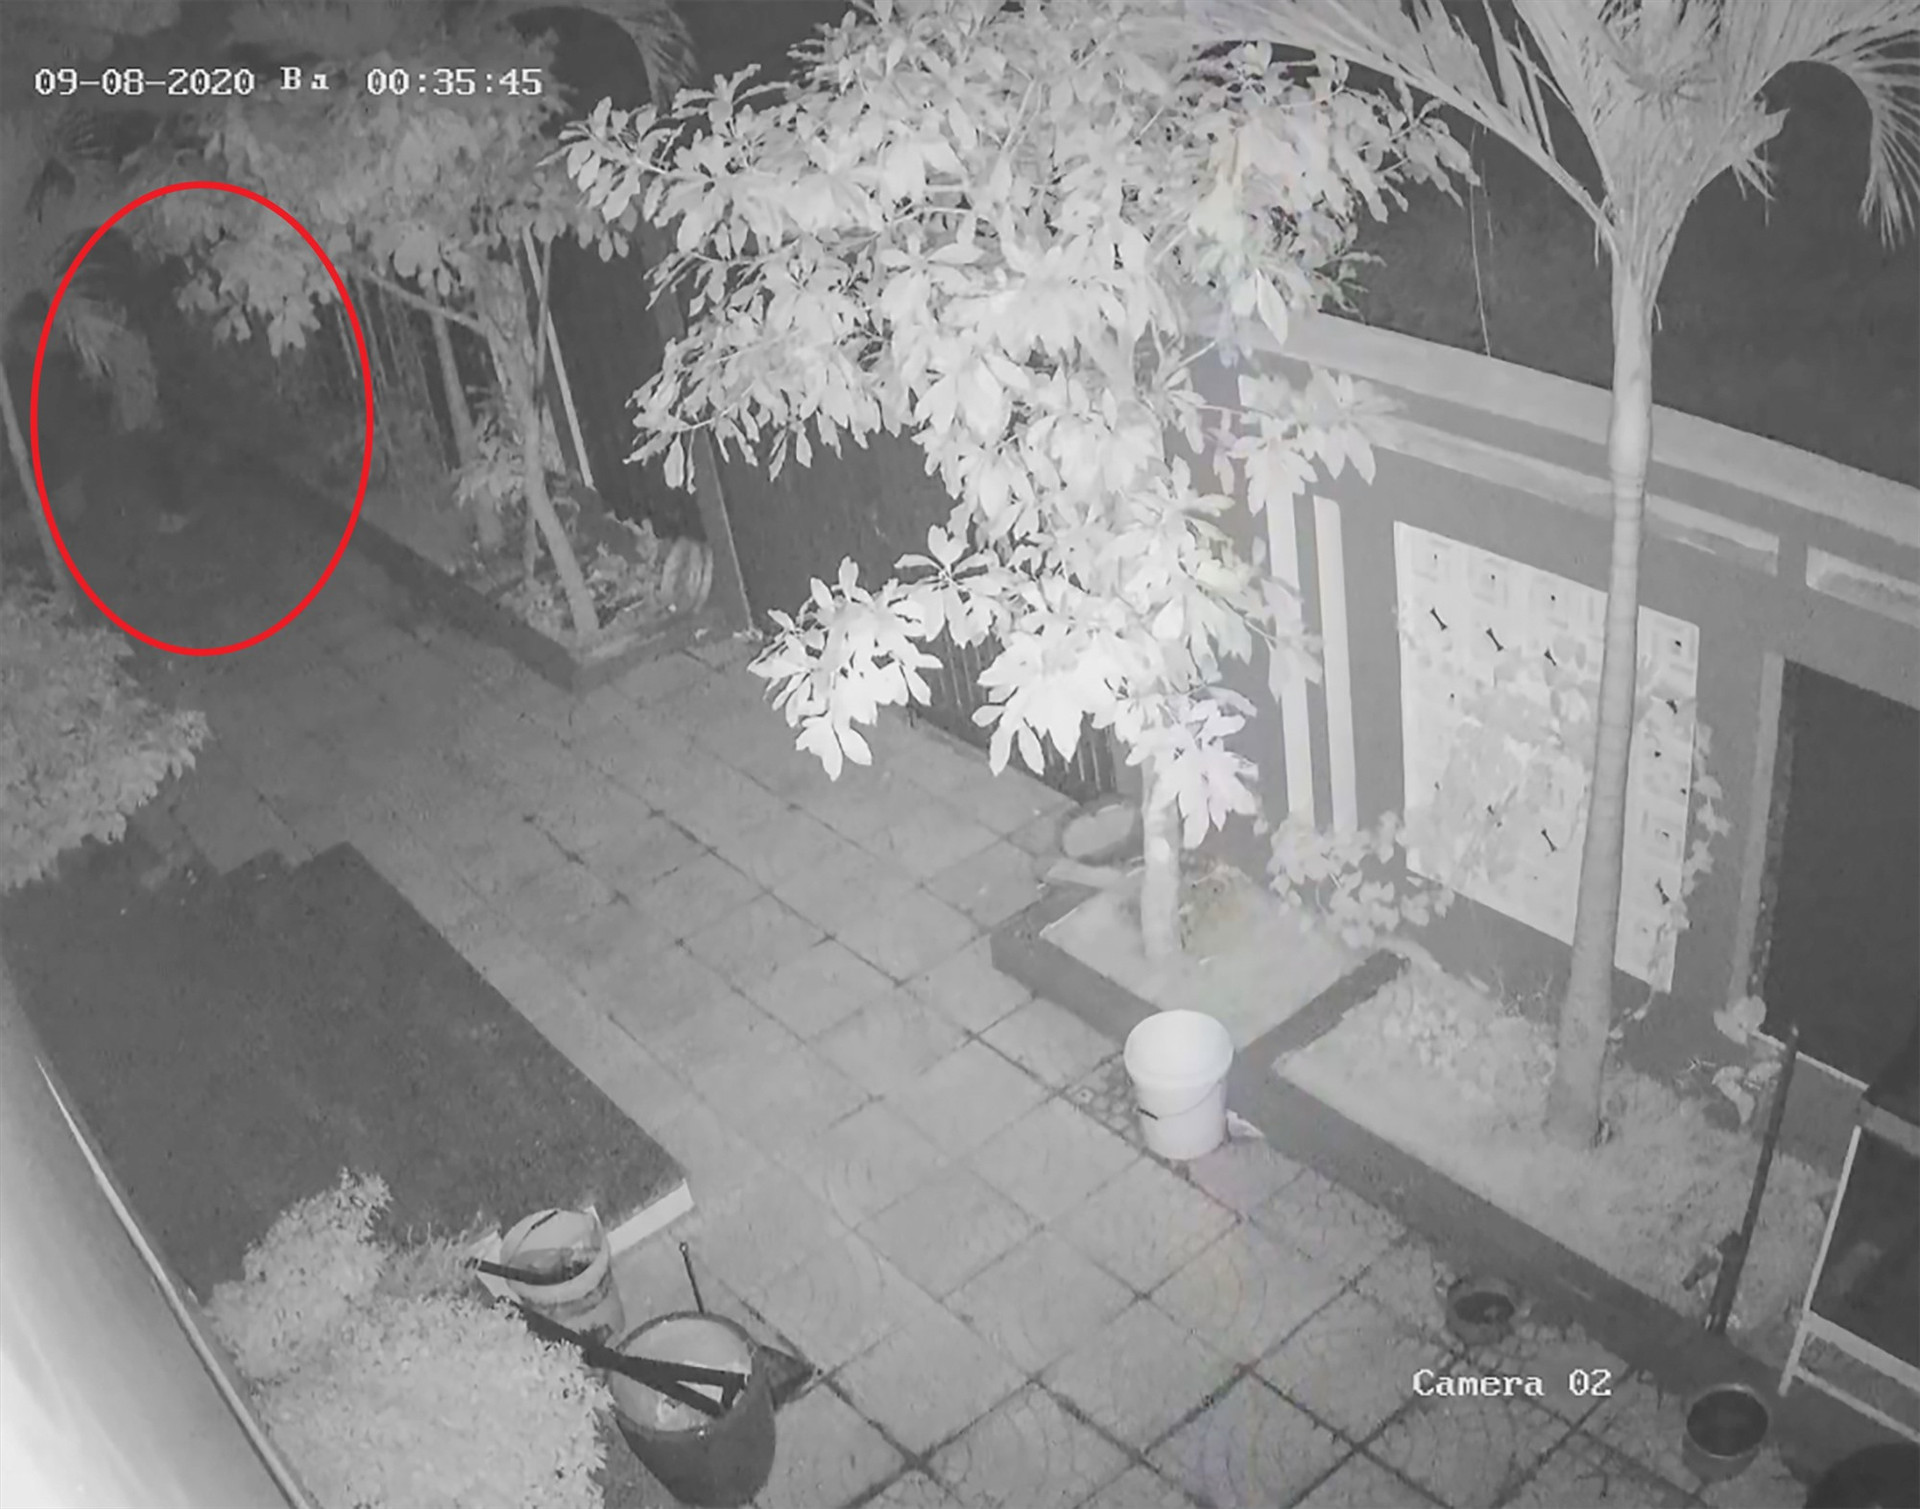 Một đối tượng đột nhập vào sân nhà anh Hoàng Thanh Trông lúc 0h35'. Phát hiện camera an ninh, đối tượng lẫn tránh, tìm cách lẻn vào nhà trộm cắp tài sản. Ảnh: NVCC